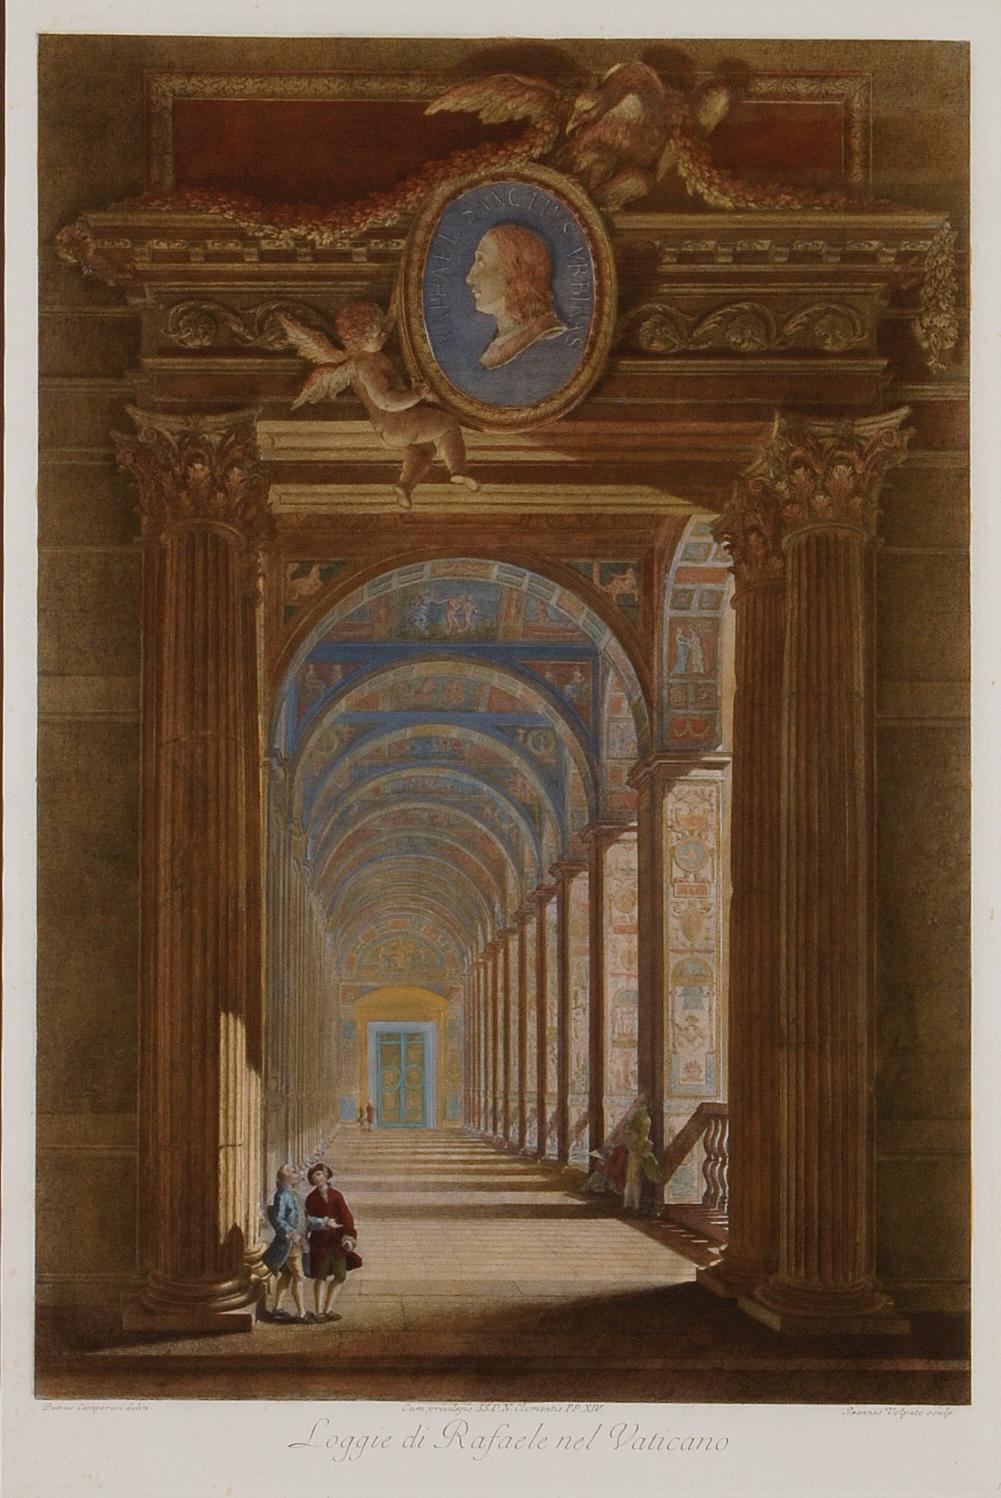  Loggie di Rafaele nel Vaticano : Gravure colorée à la main du 18e siècle par Volpato - Print de Giovanni Volpato